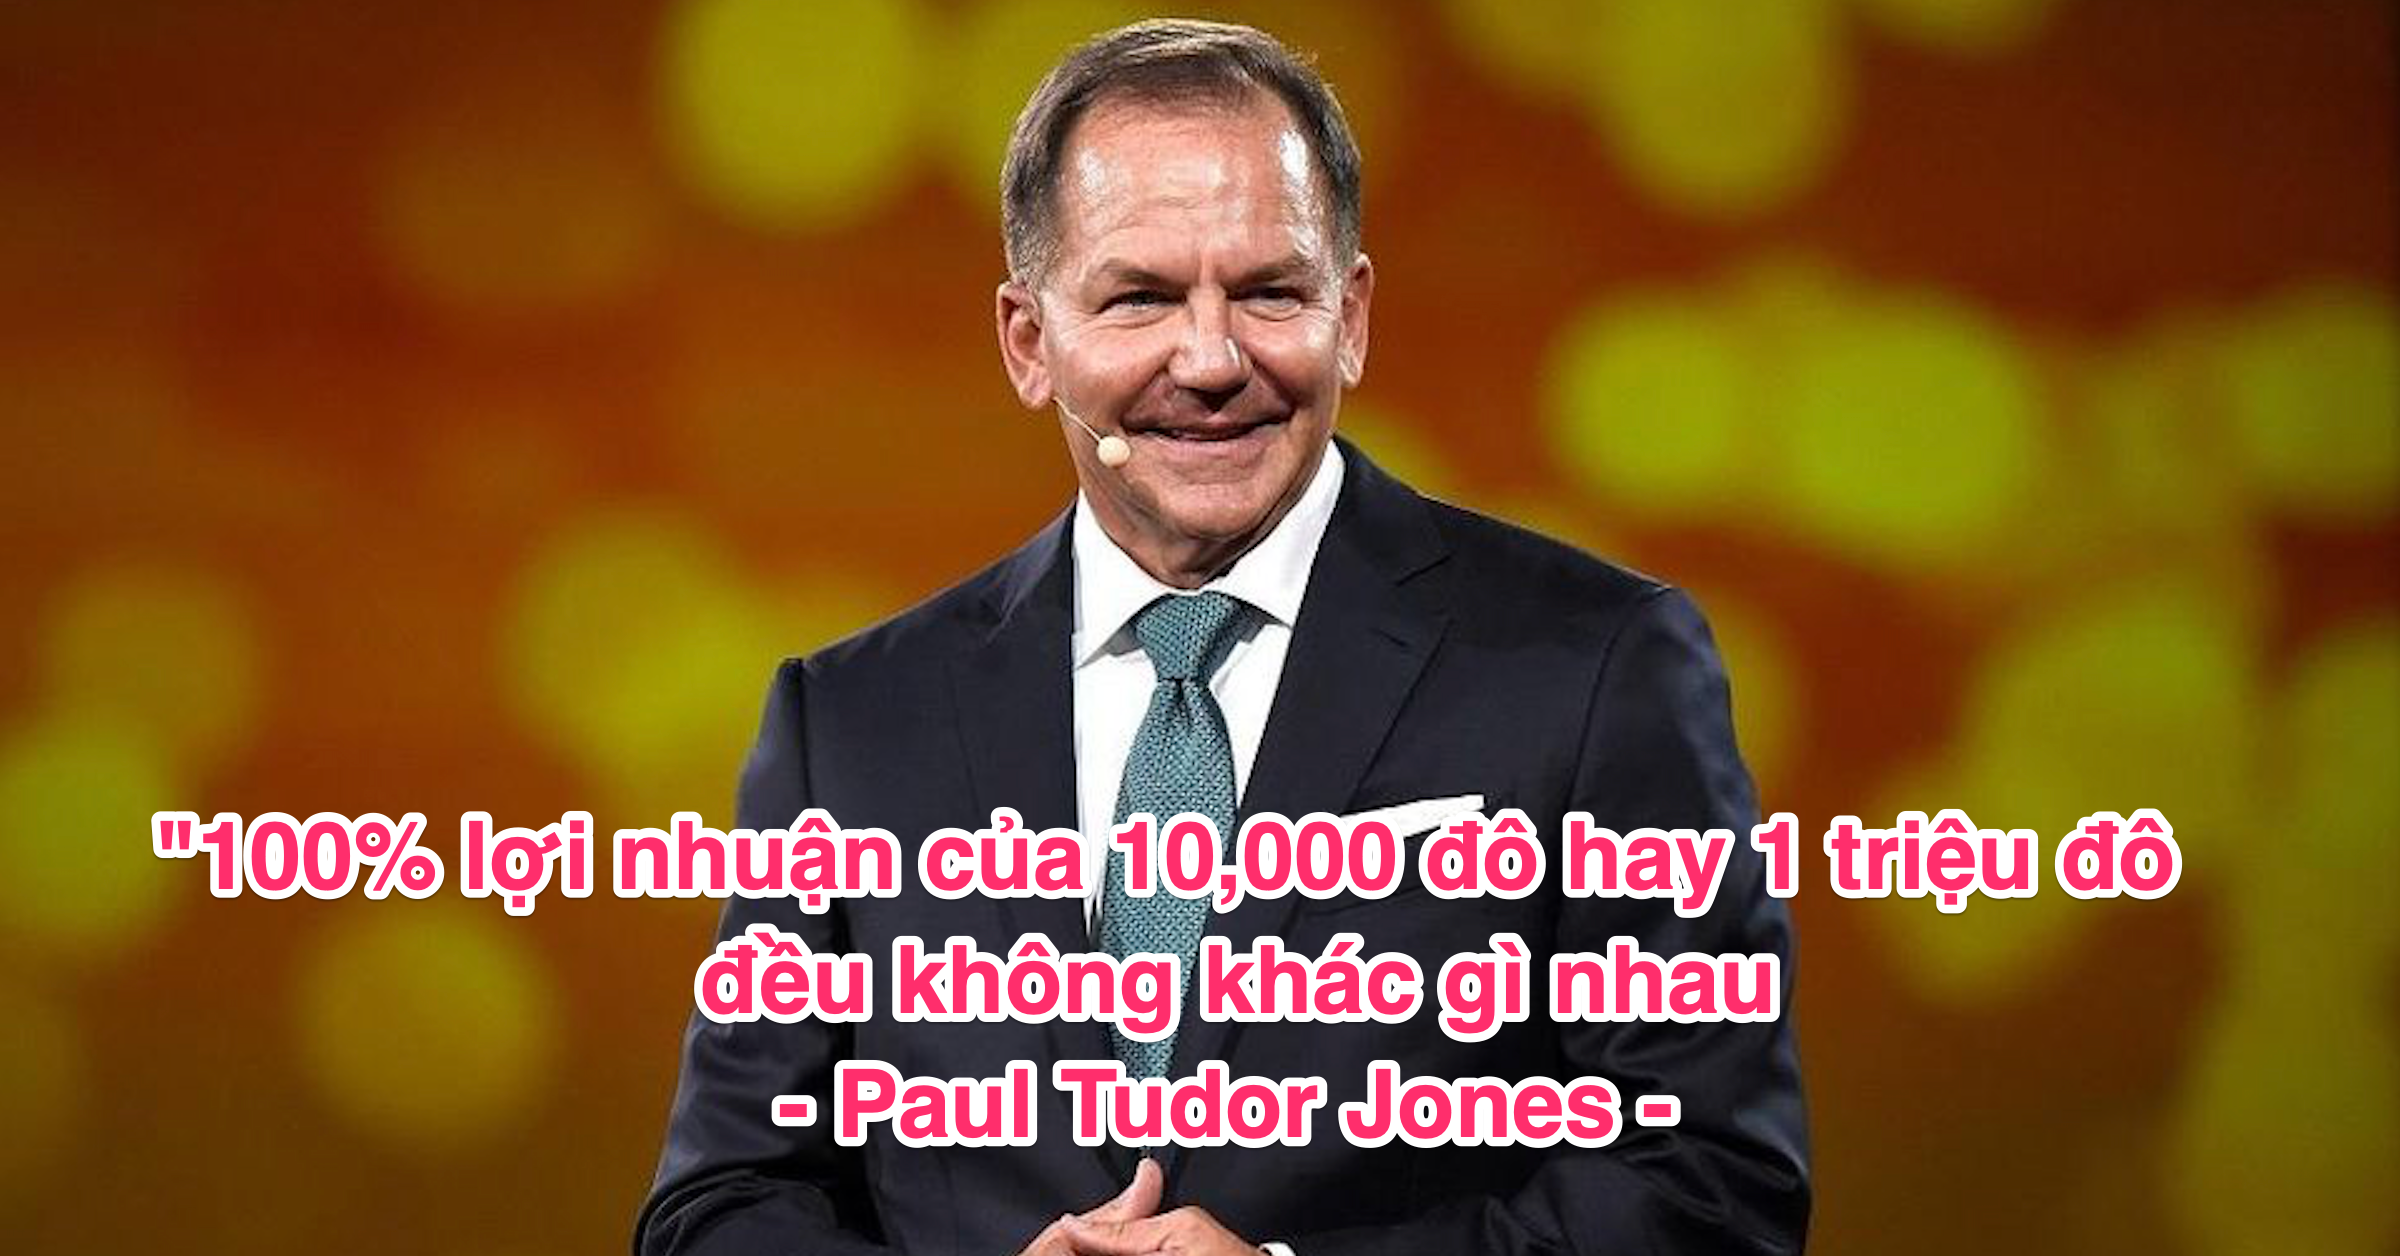 Paul Tudor Jones xác nhận có hơn 1% tài sản bằng Bitcoin